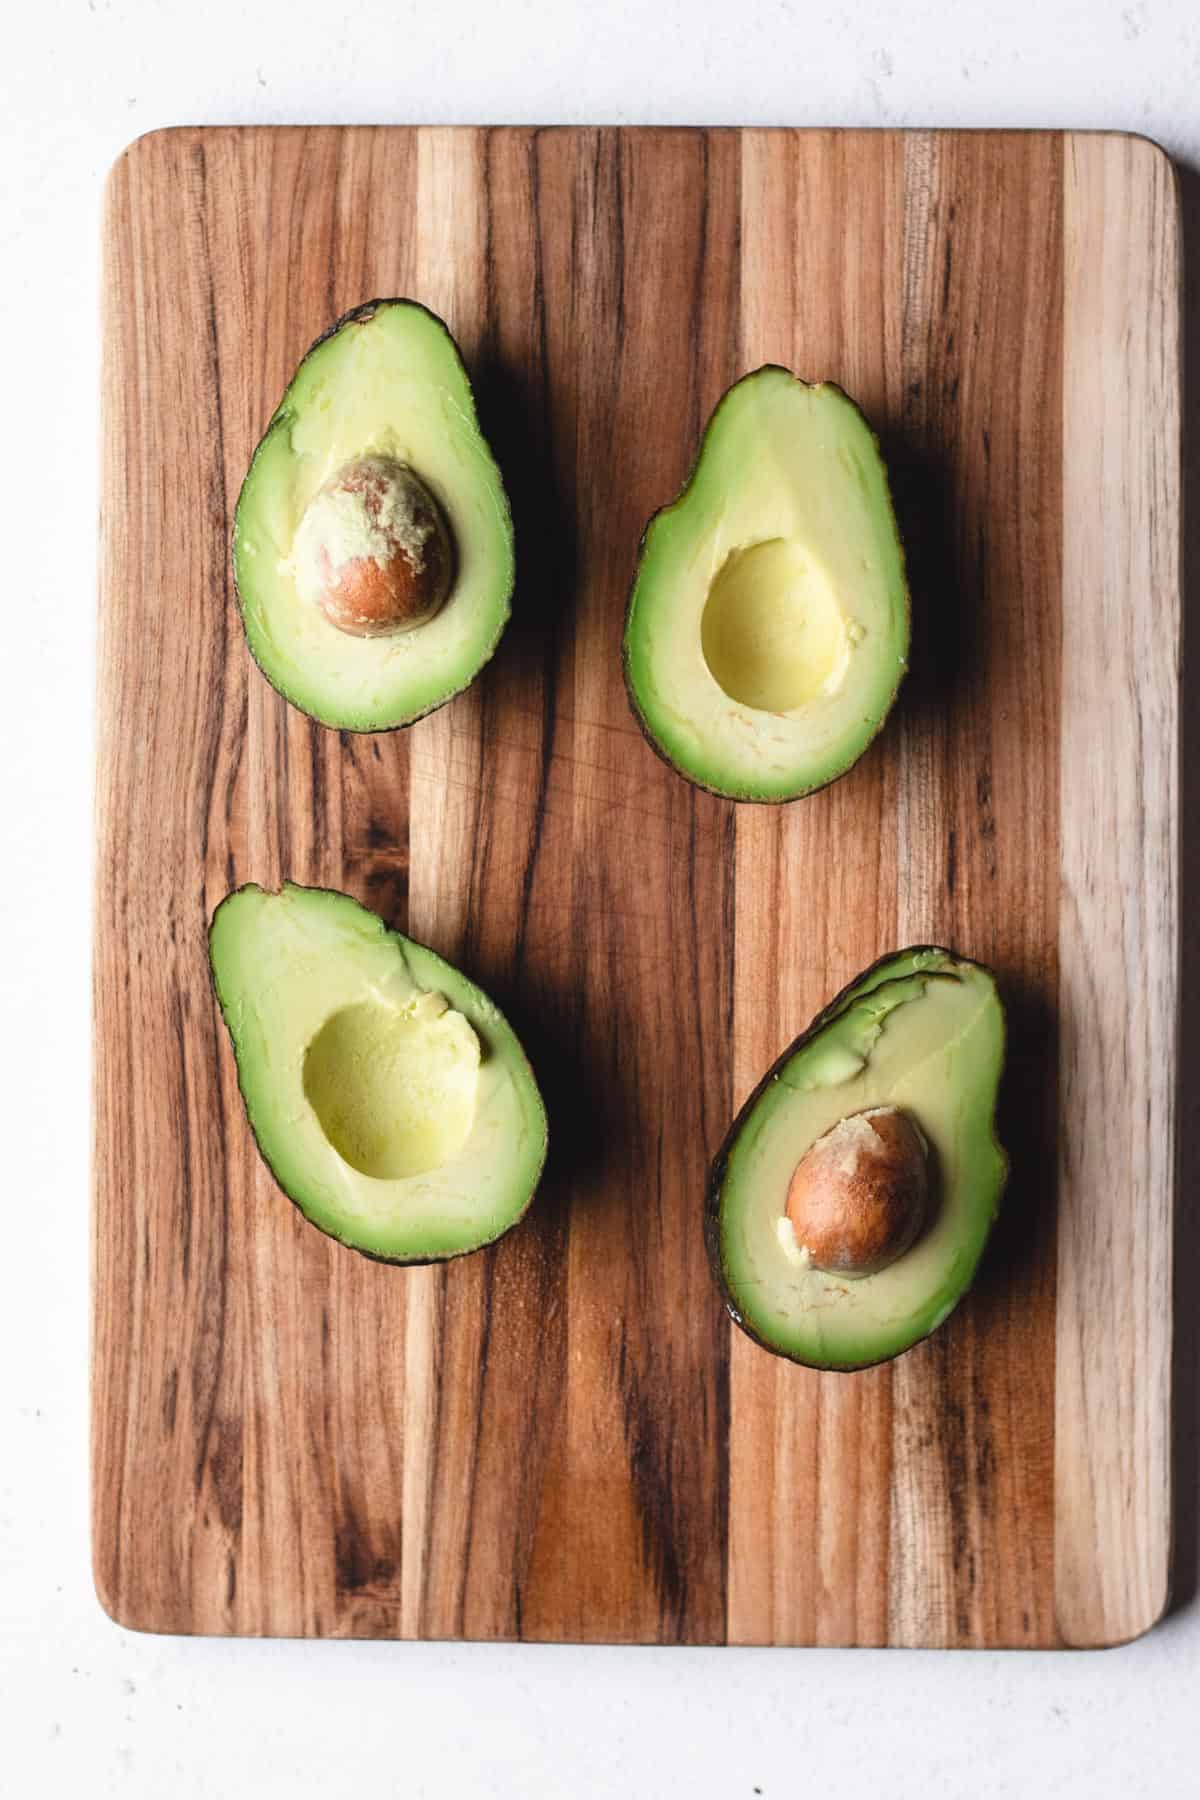 Avocado's cut in half on a wooden cutting board.